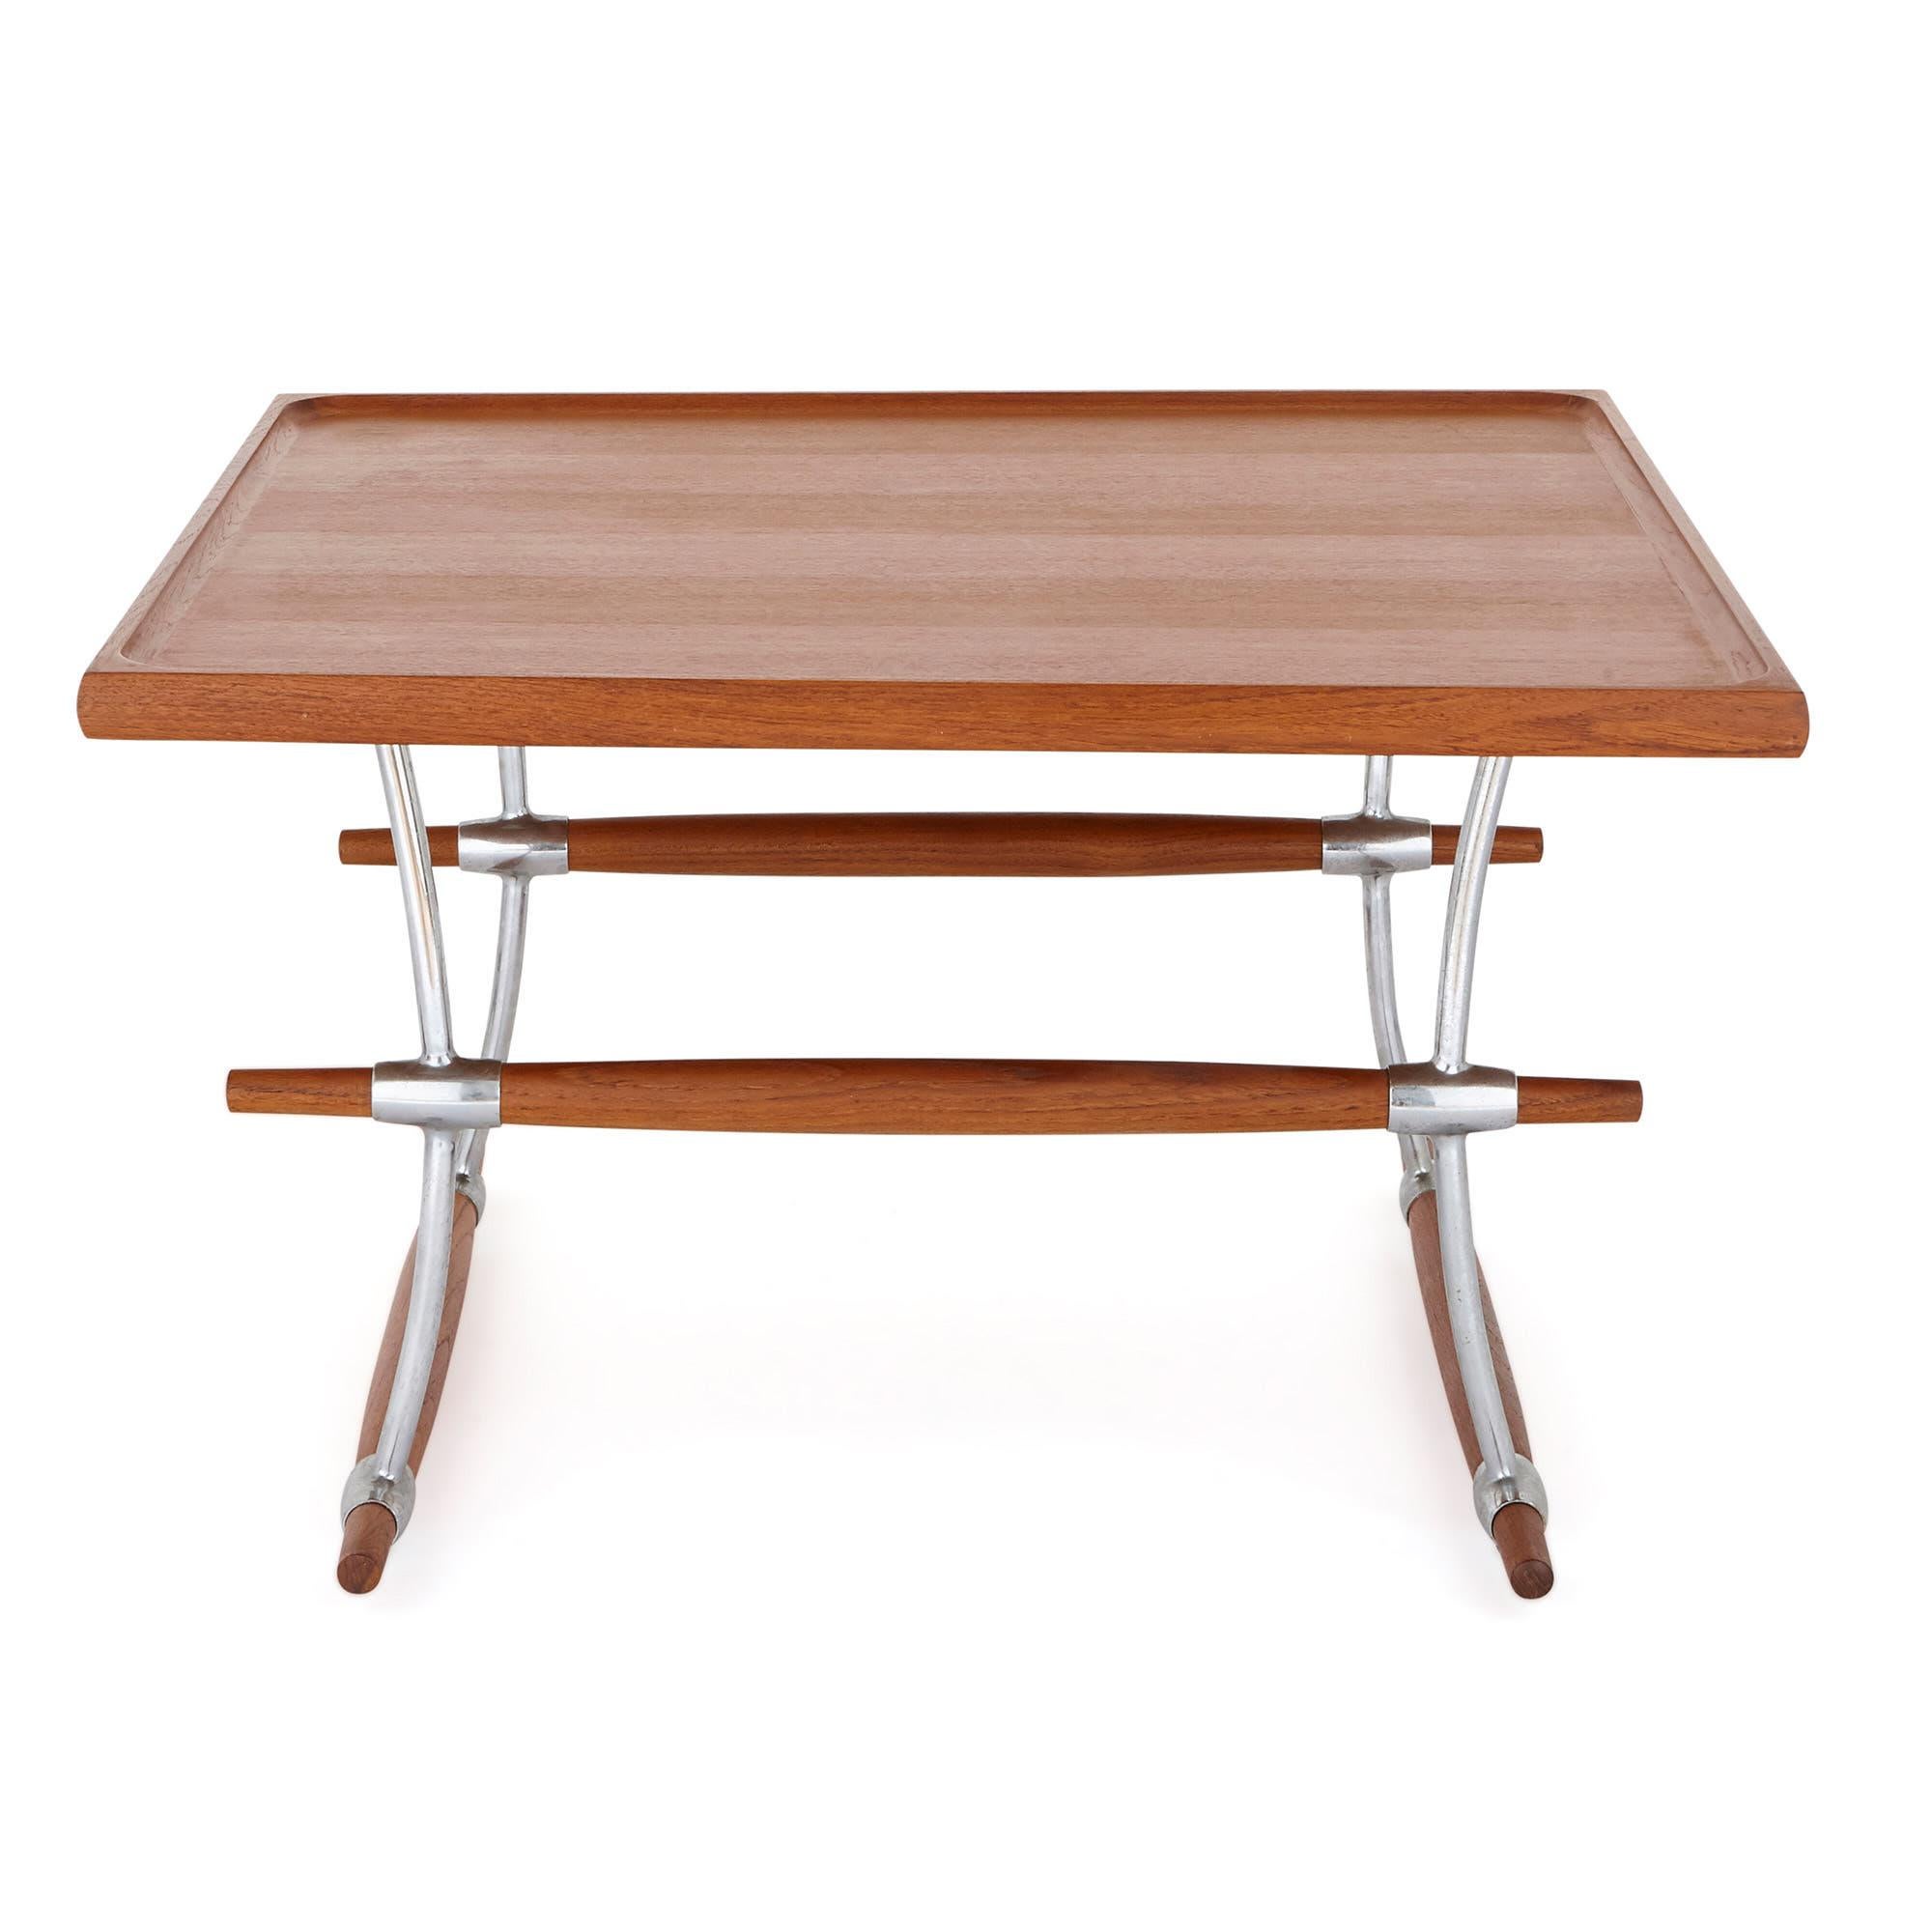 Cette table basse élégante a été créée par le célèbre designer Jens Harald Quistgaard (danois, 1919-2008). Quistgaard a été le designer en chef d'une société américaine appelée Dansk Designs pendant une trentaine d'années à partir de 1954. Il a été